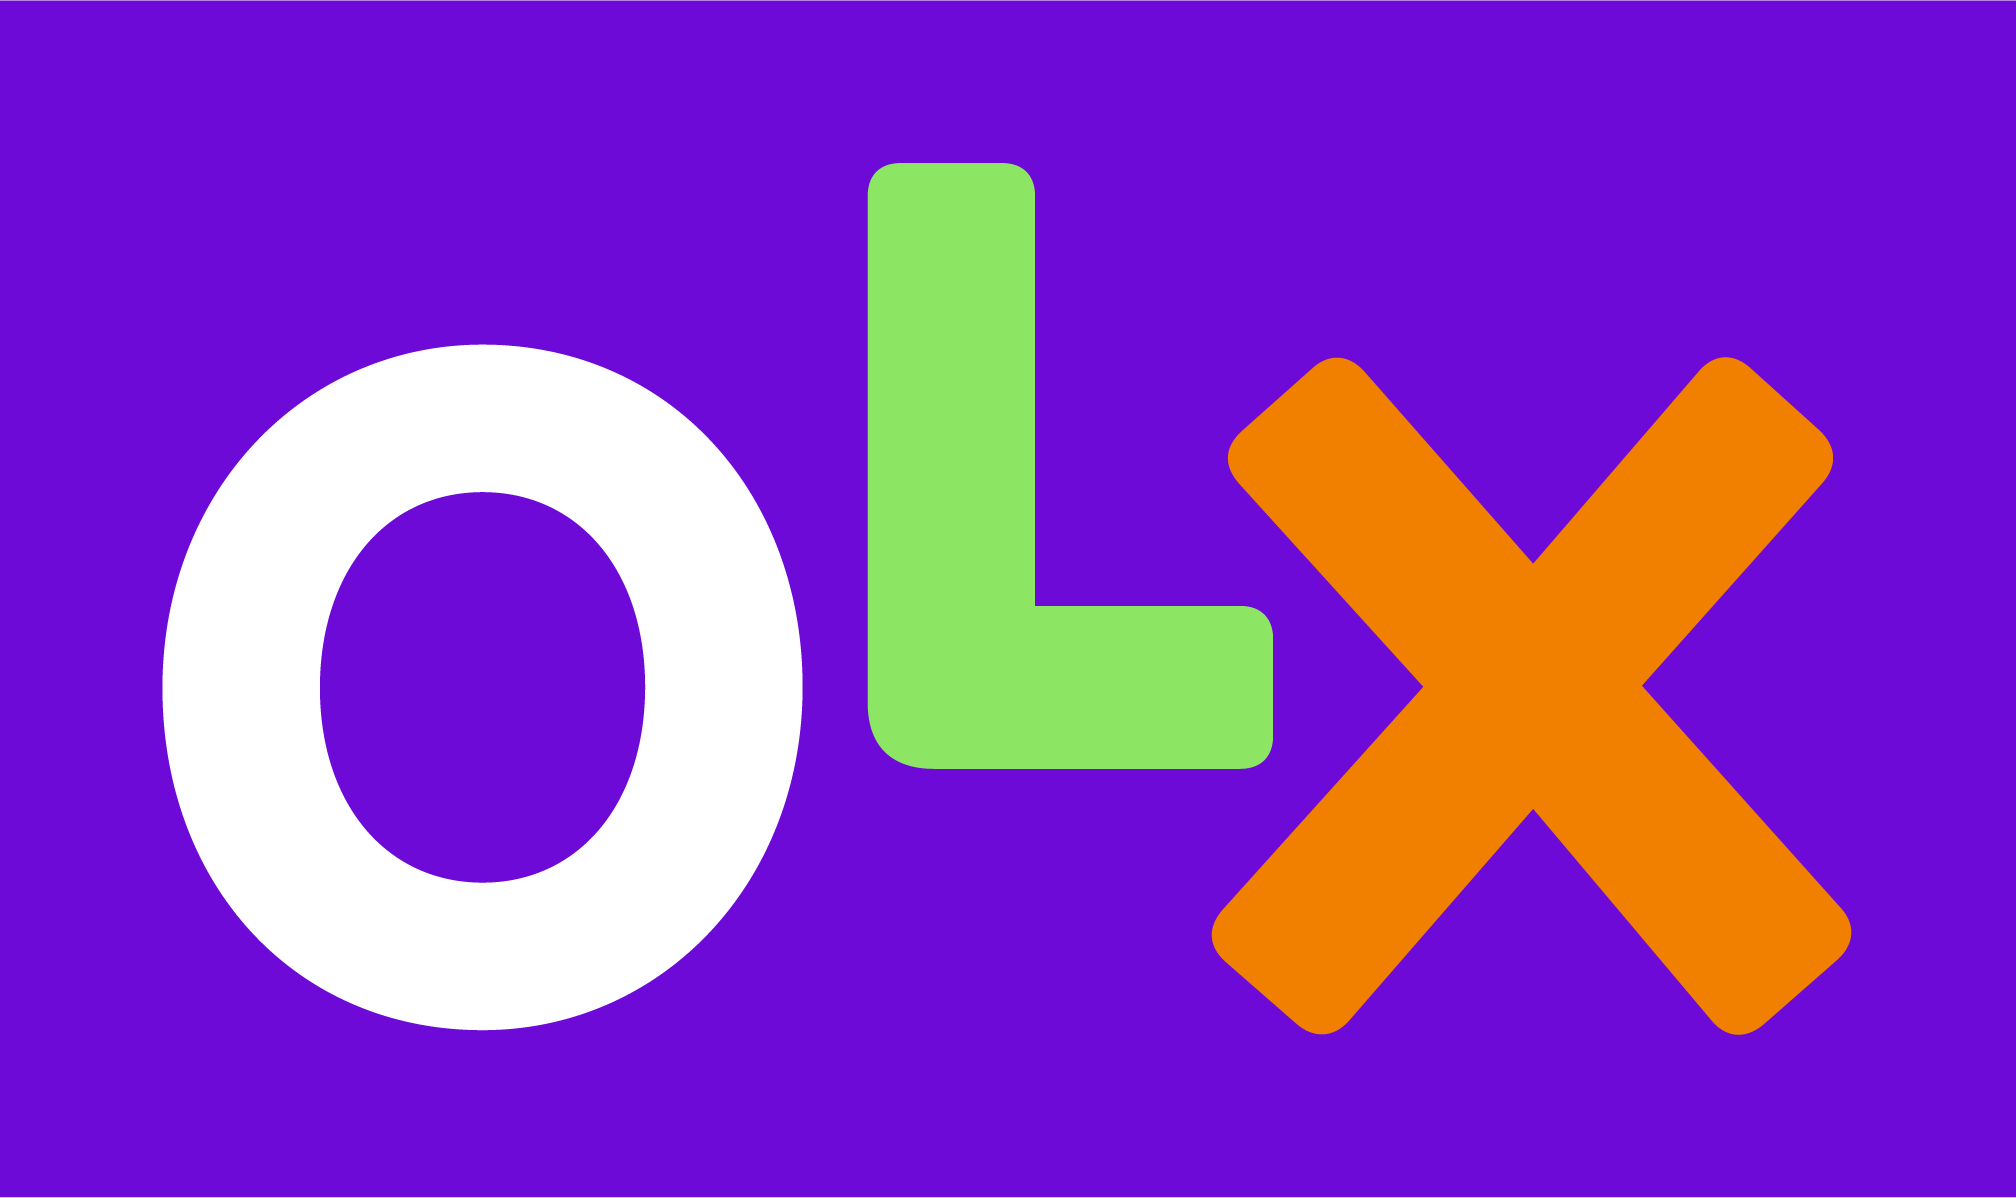 logo olx 1 1